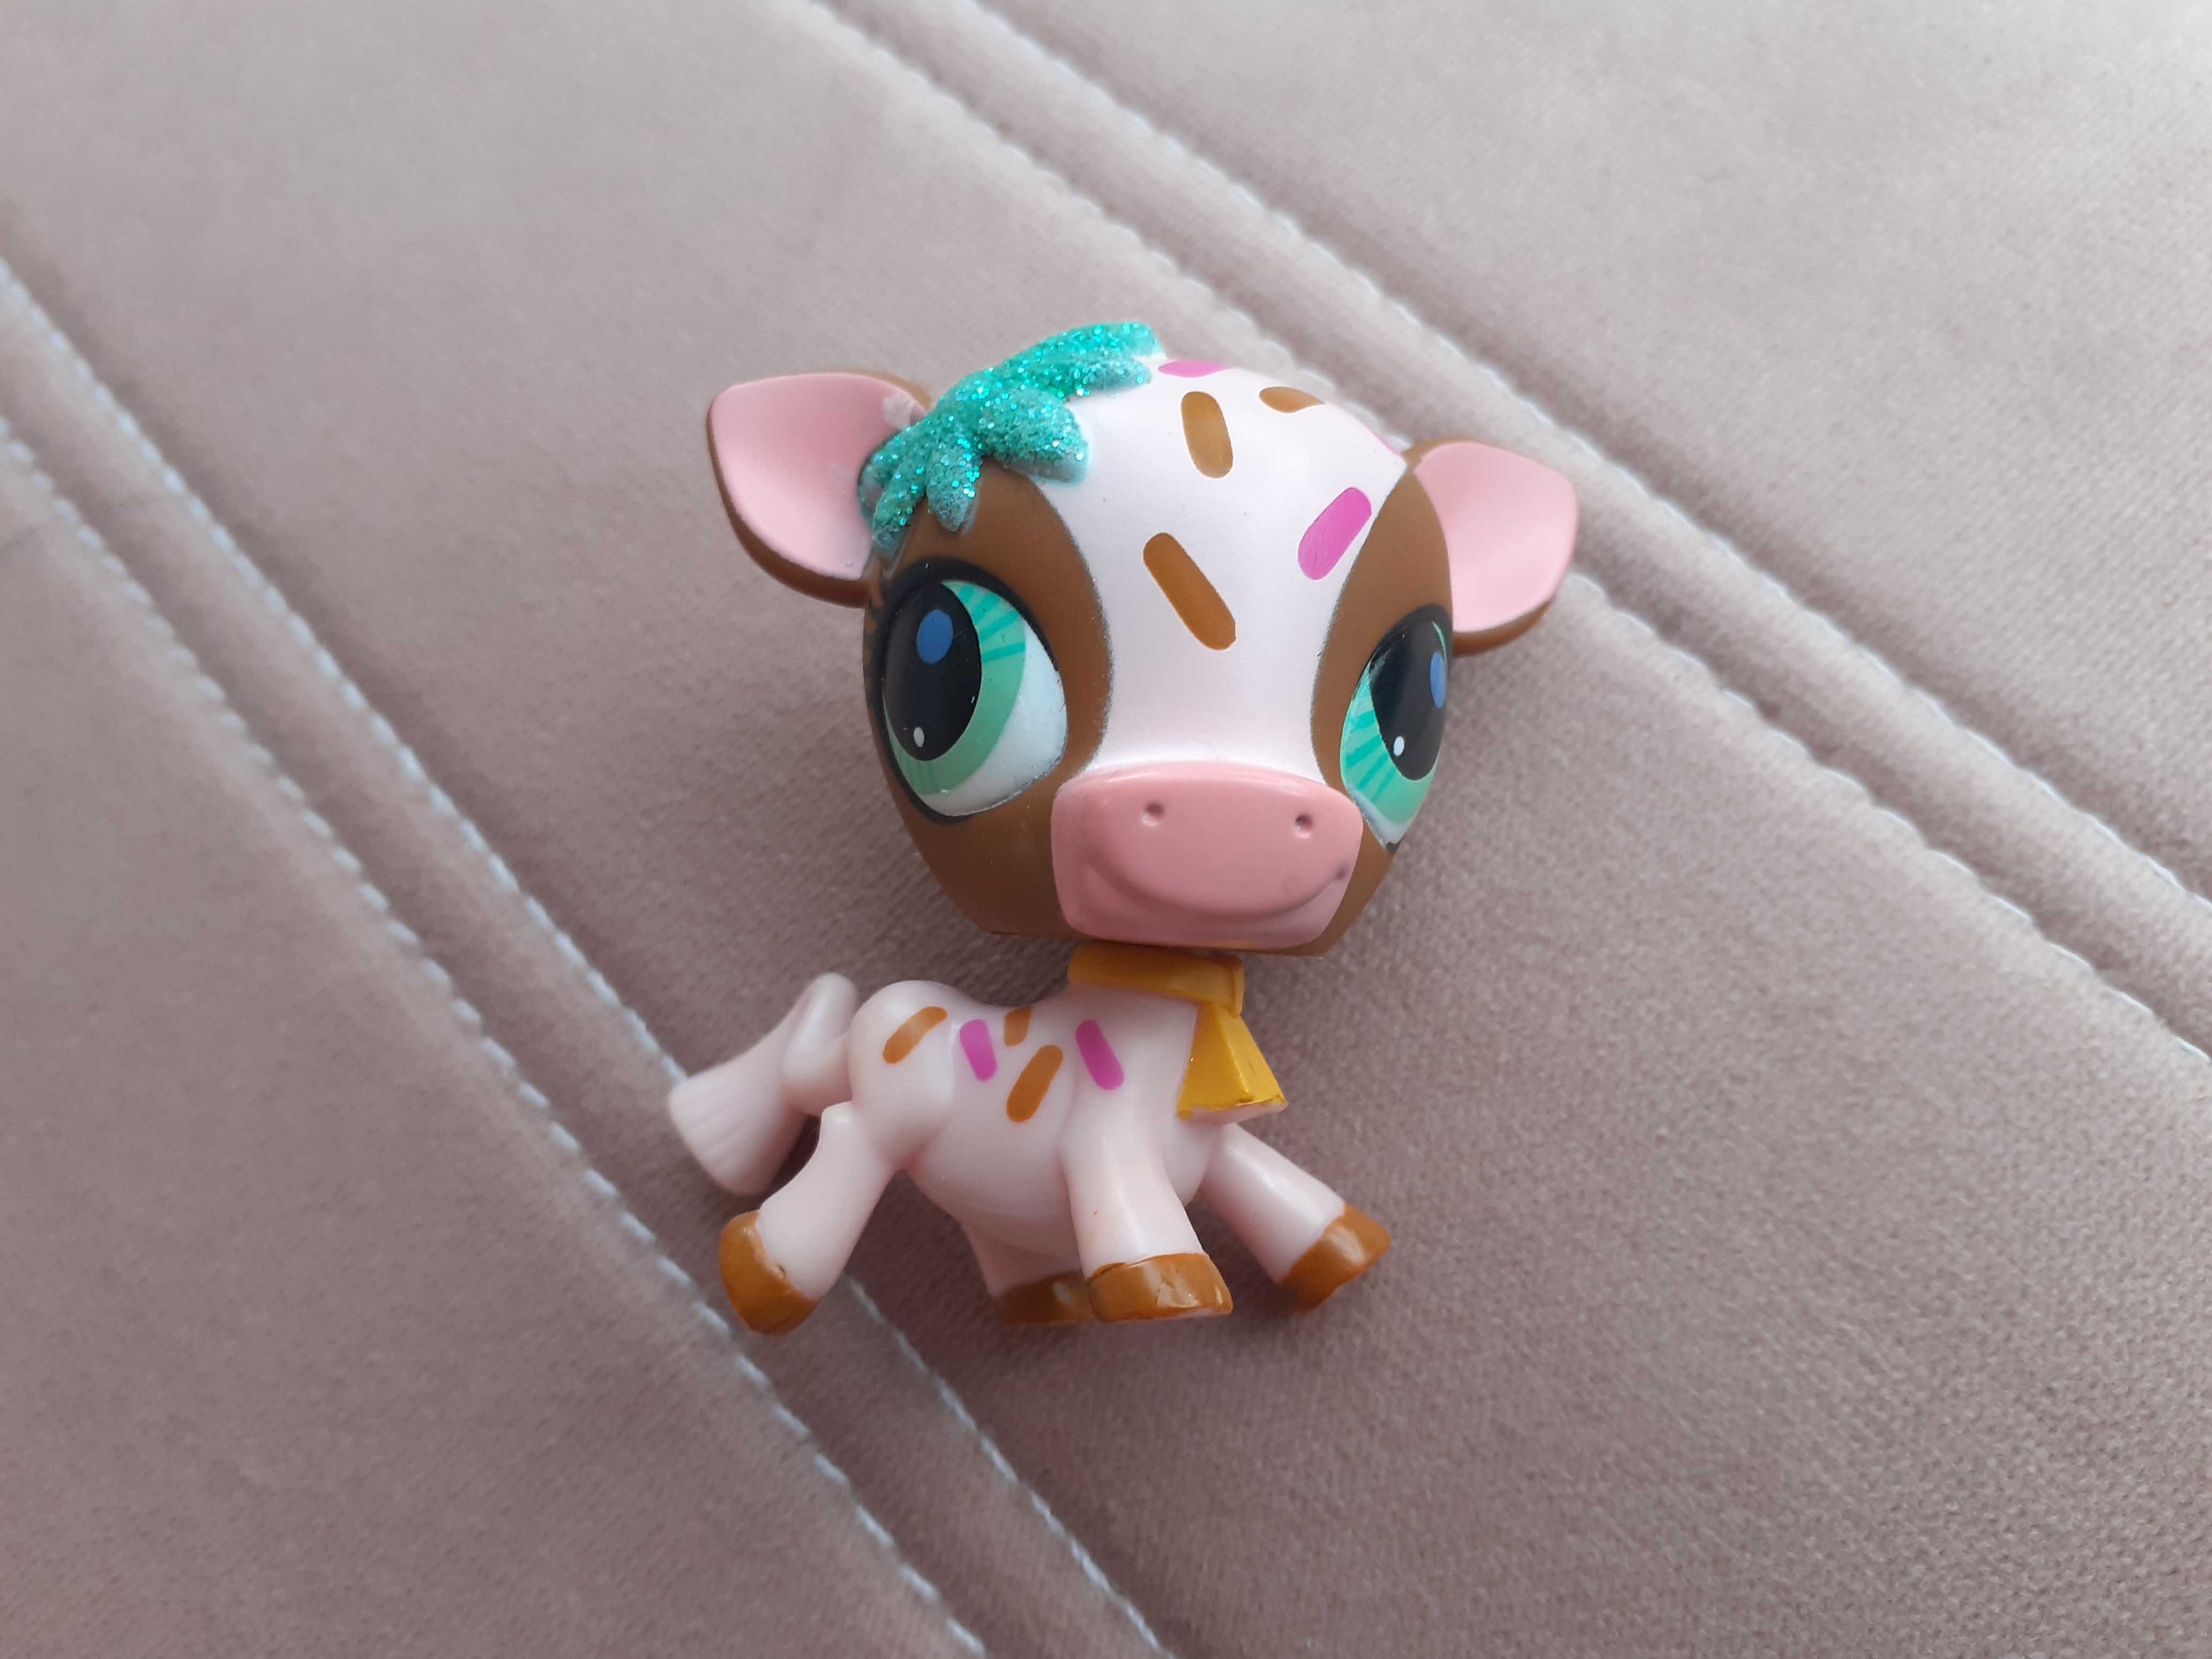 LPS krowa cow krówka littlest pet shop figurka #3126 #A2134 Sweetest